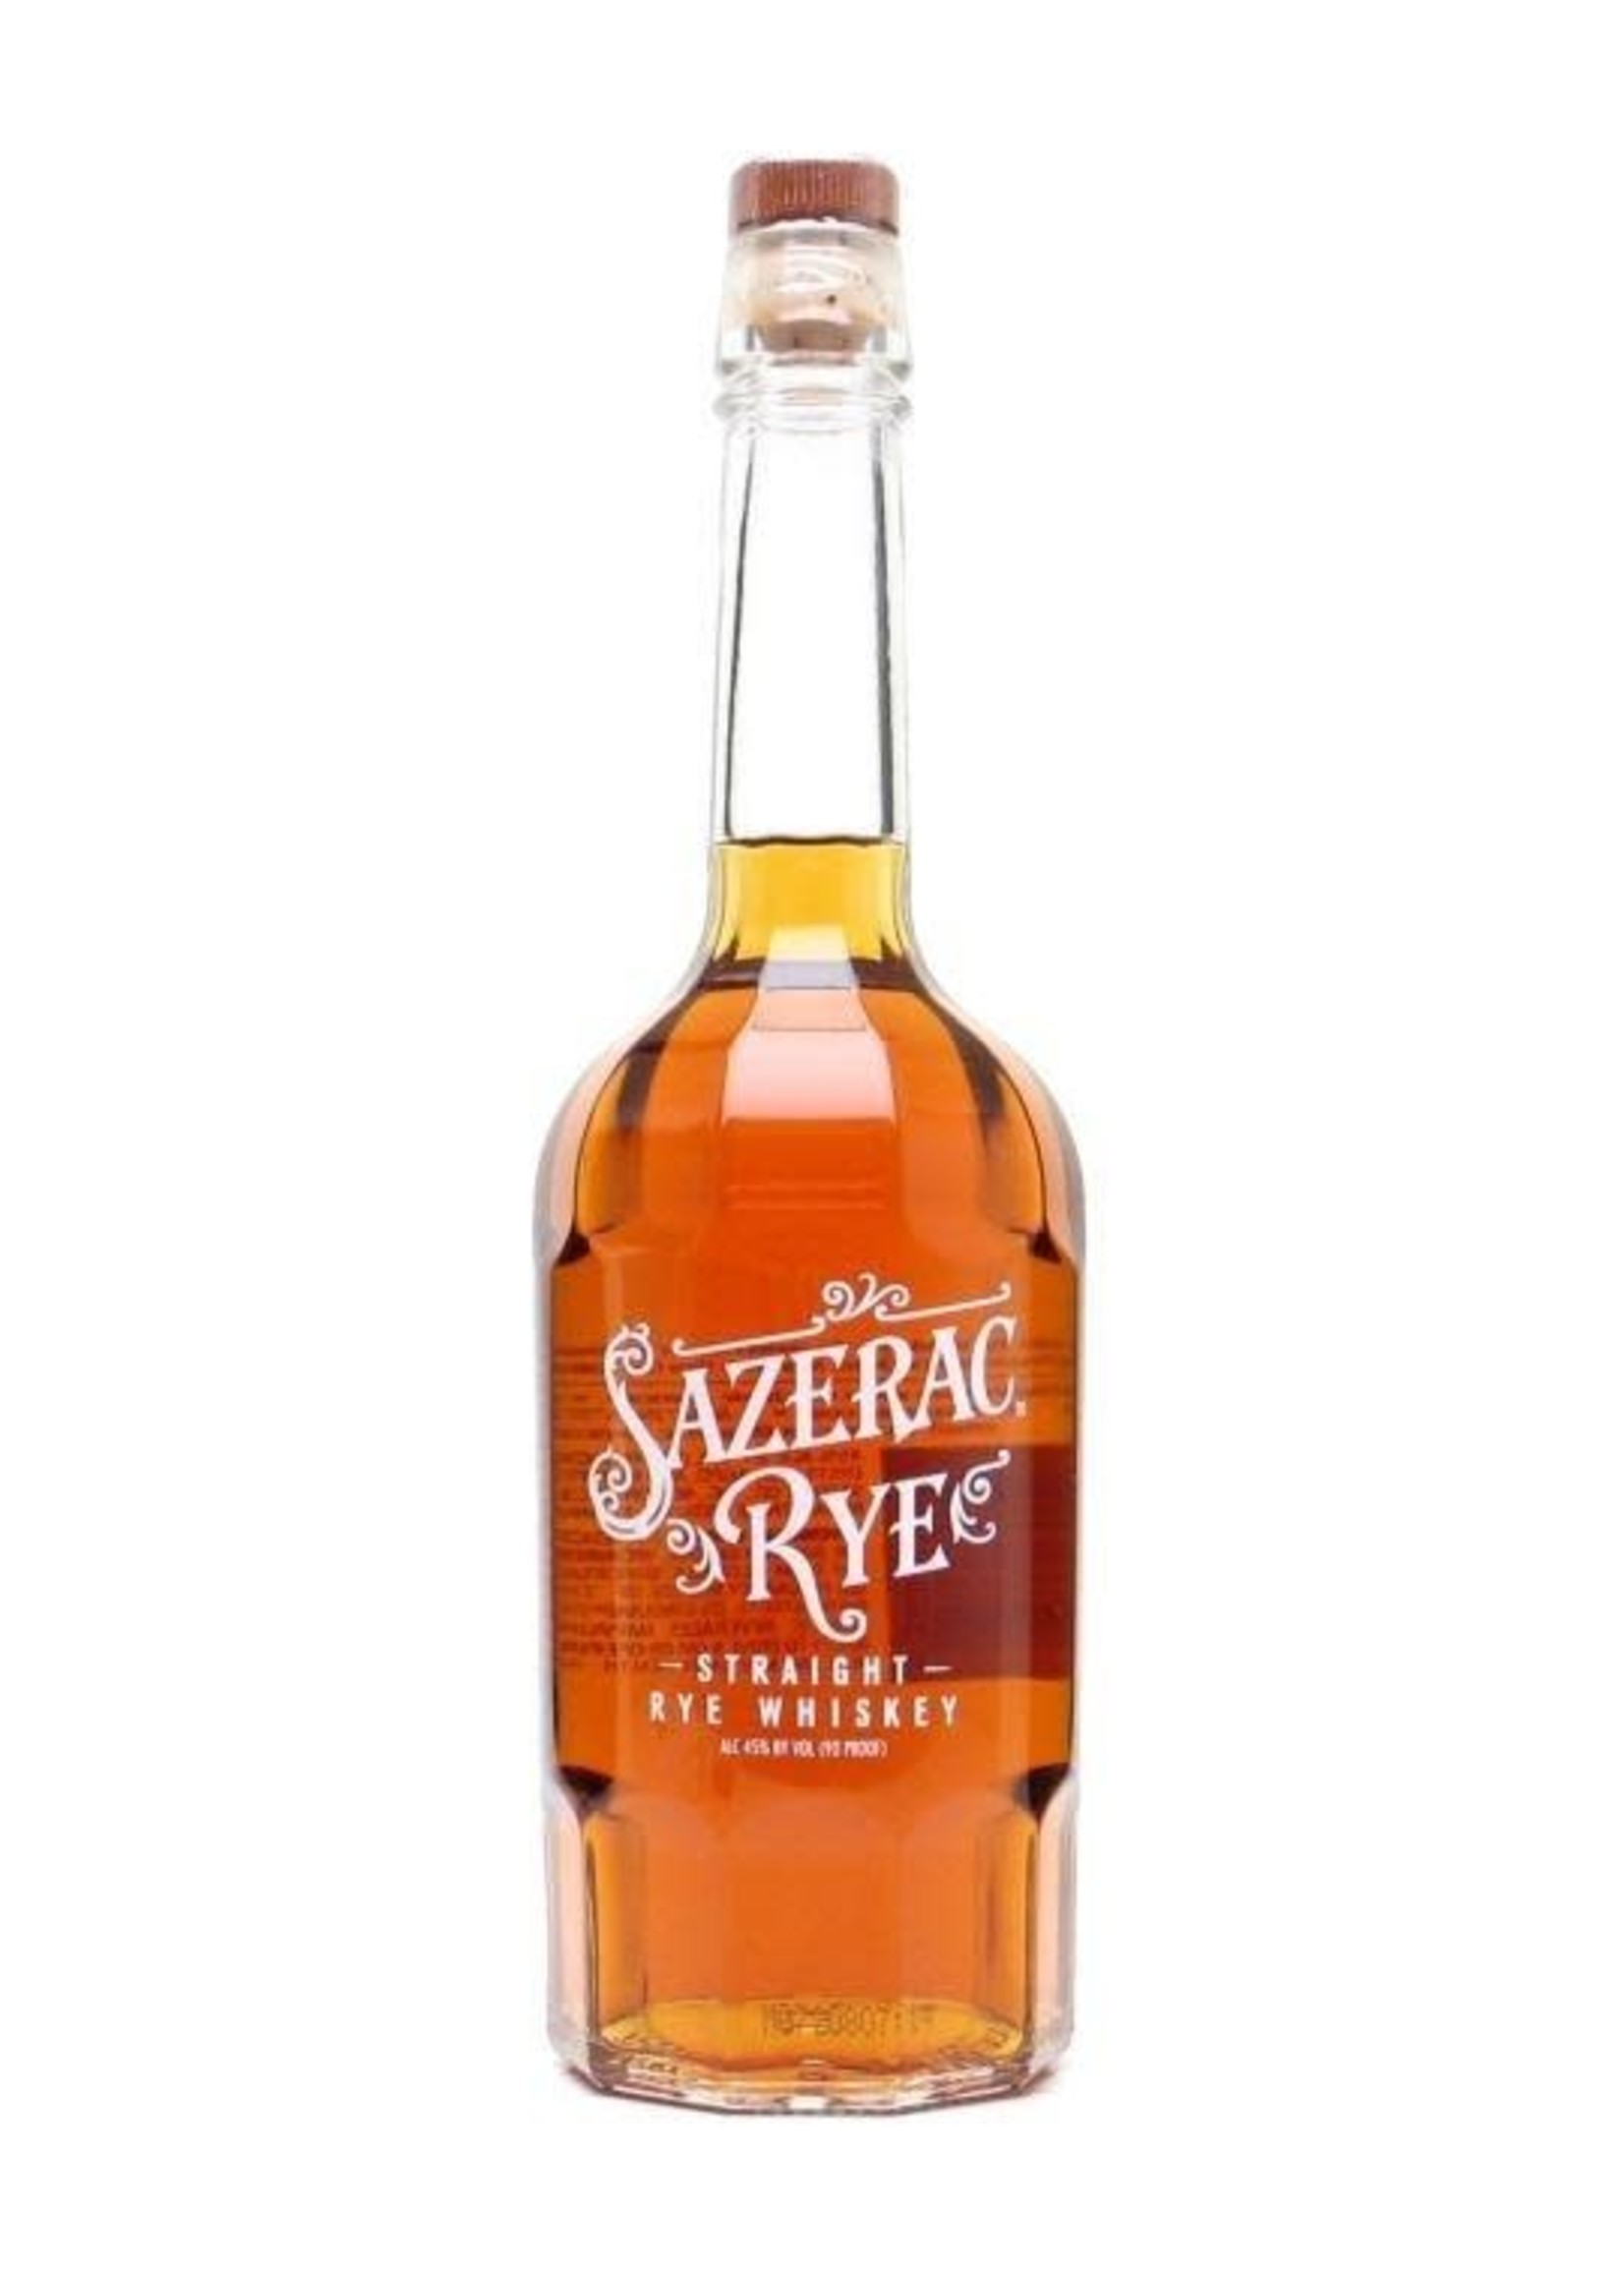 Sazerac Rye Sazerac Rye / Straight Rye Whiskey